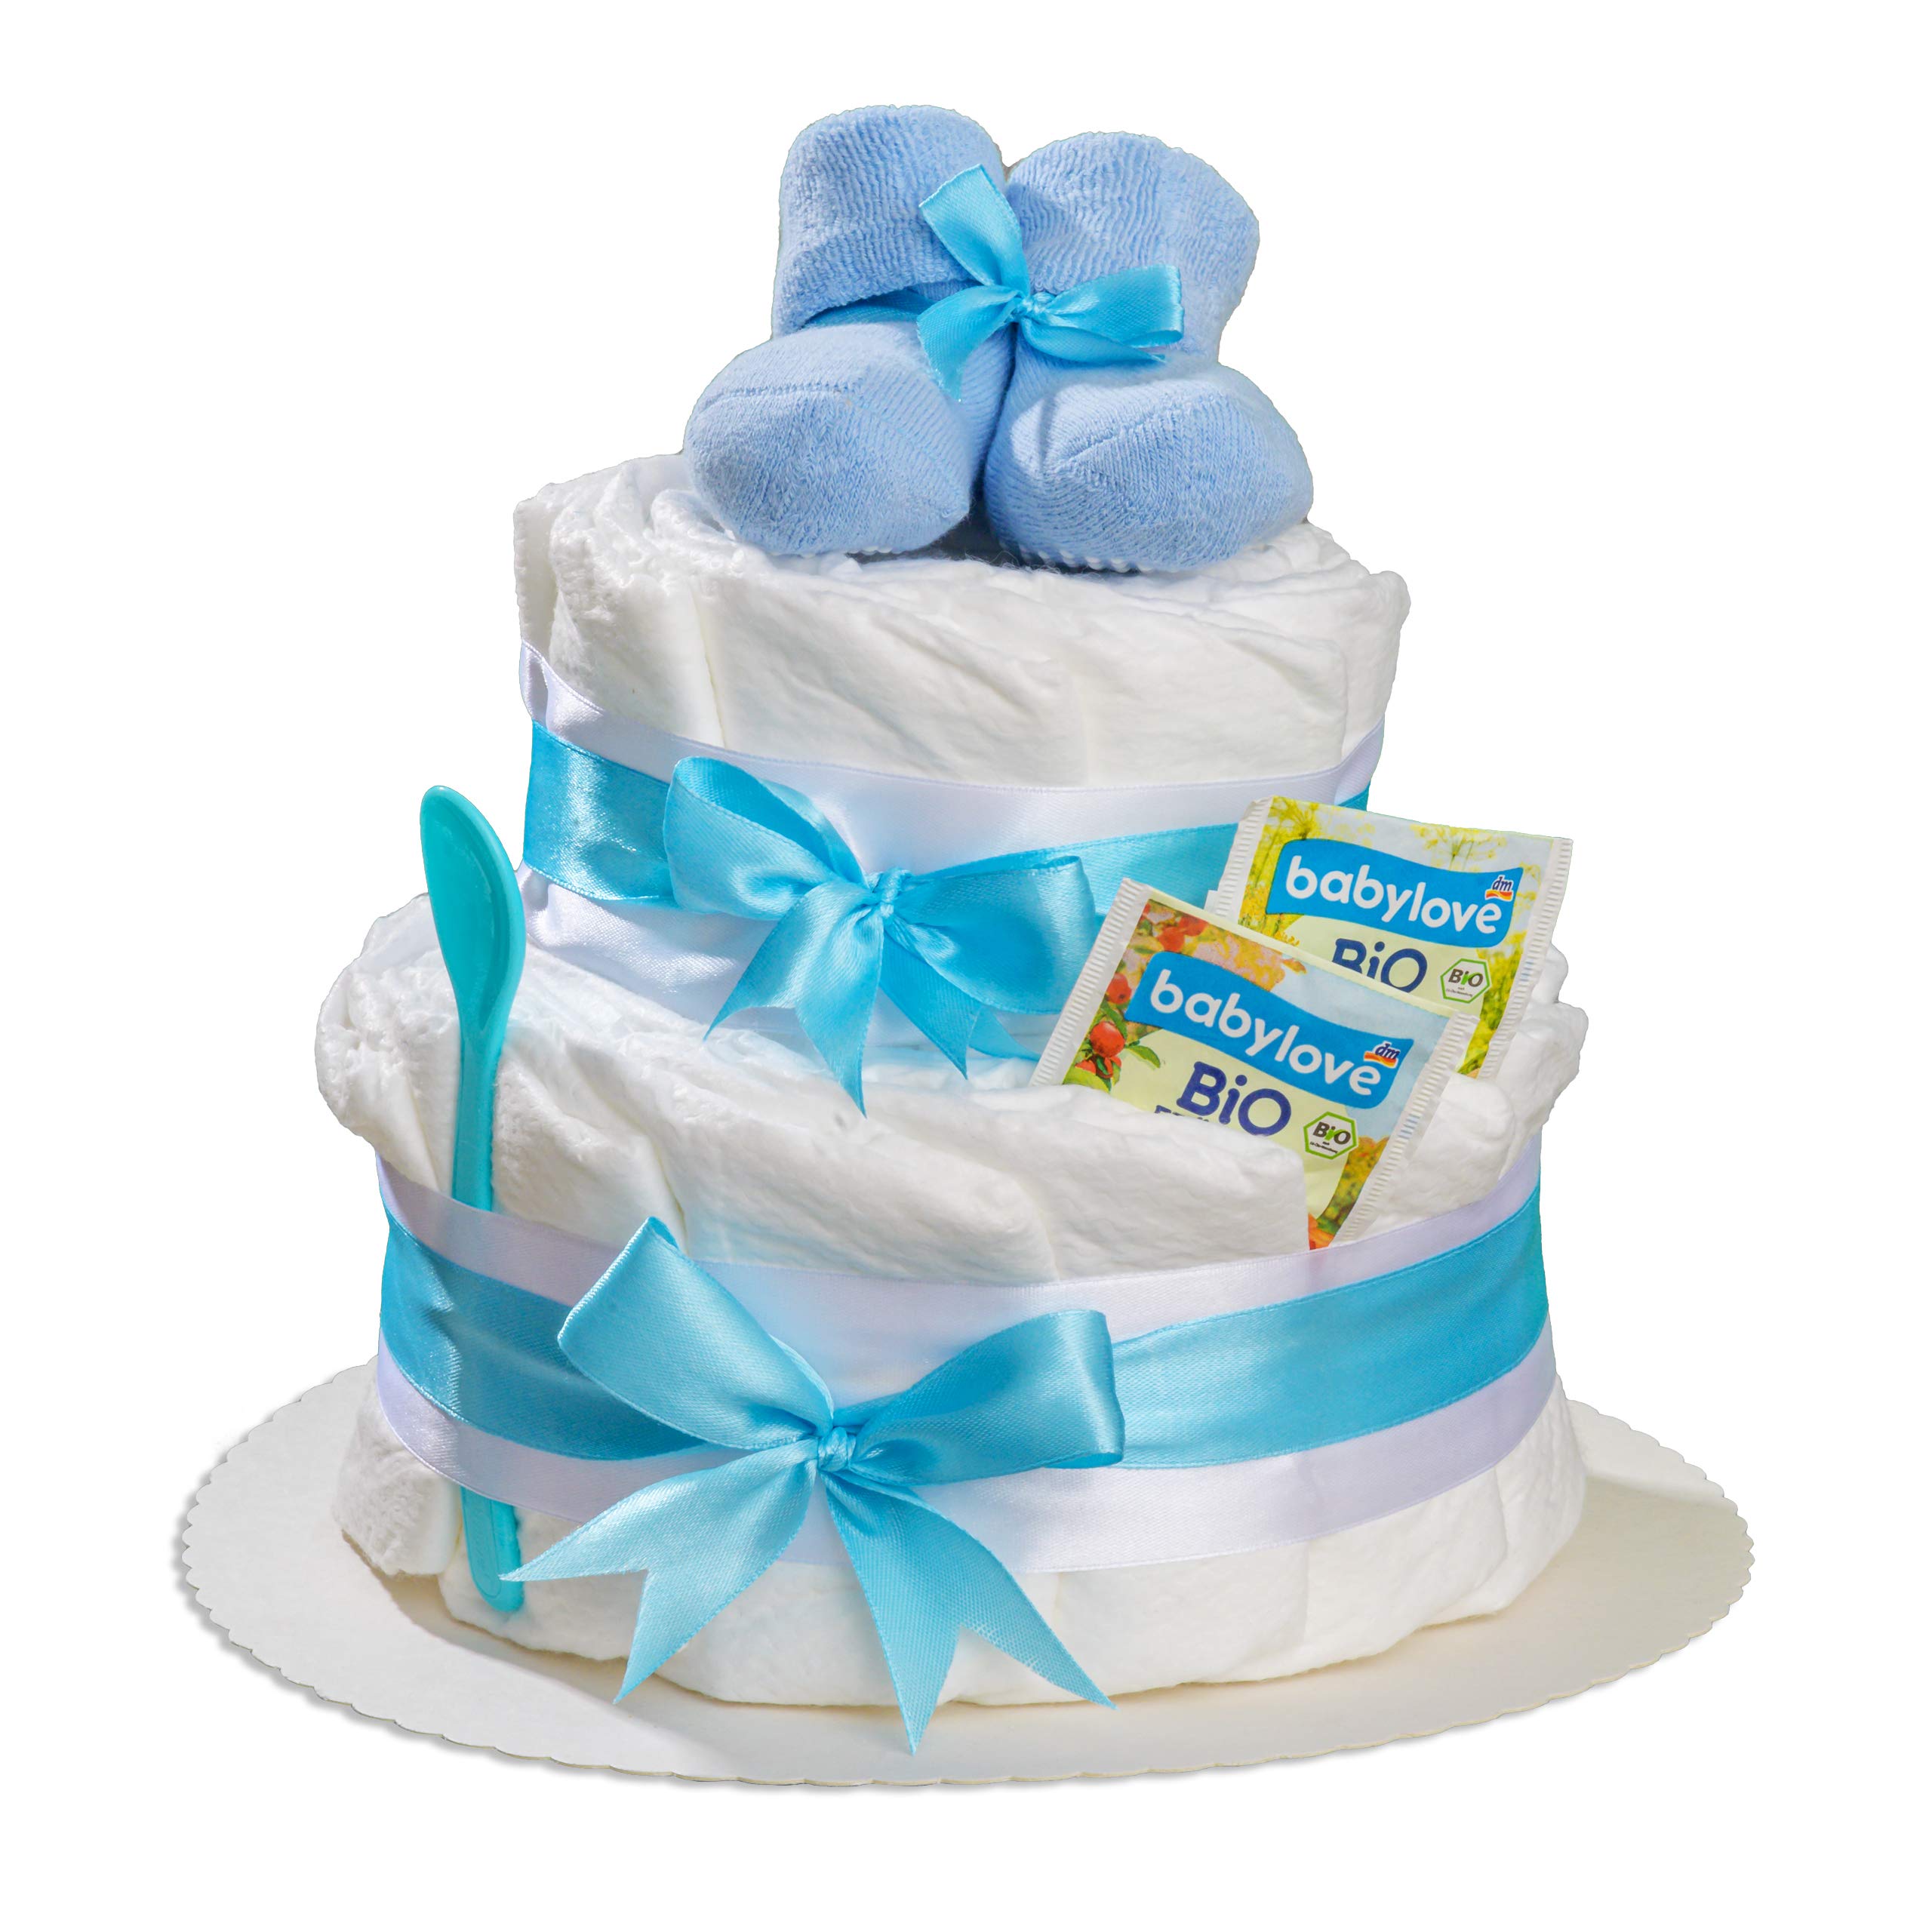 Windeltorte 2 stöckig in Blau mit Babysocken für Junge, Pinkelparty Geschenke zur Geburt, Taufe oder Baby-Party - Geschenkidee mit neugeborene Windeln - Inkl. Glückwunschkarte